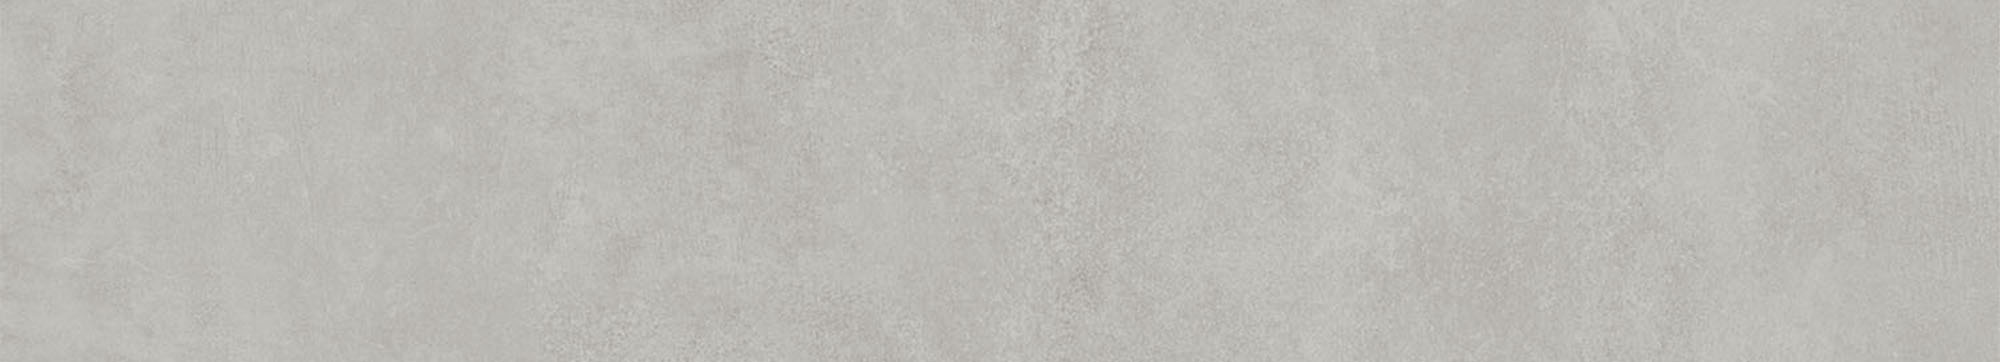 DD841190R/4 Подступенок Про Догана серый светлый матовый обрезной 80x14,5x0,9 Kerama Marazzi